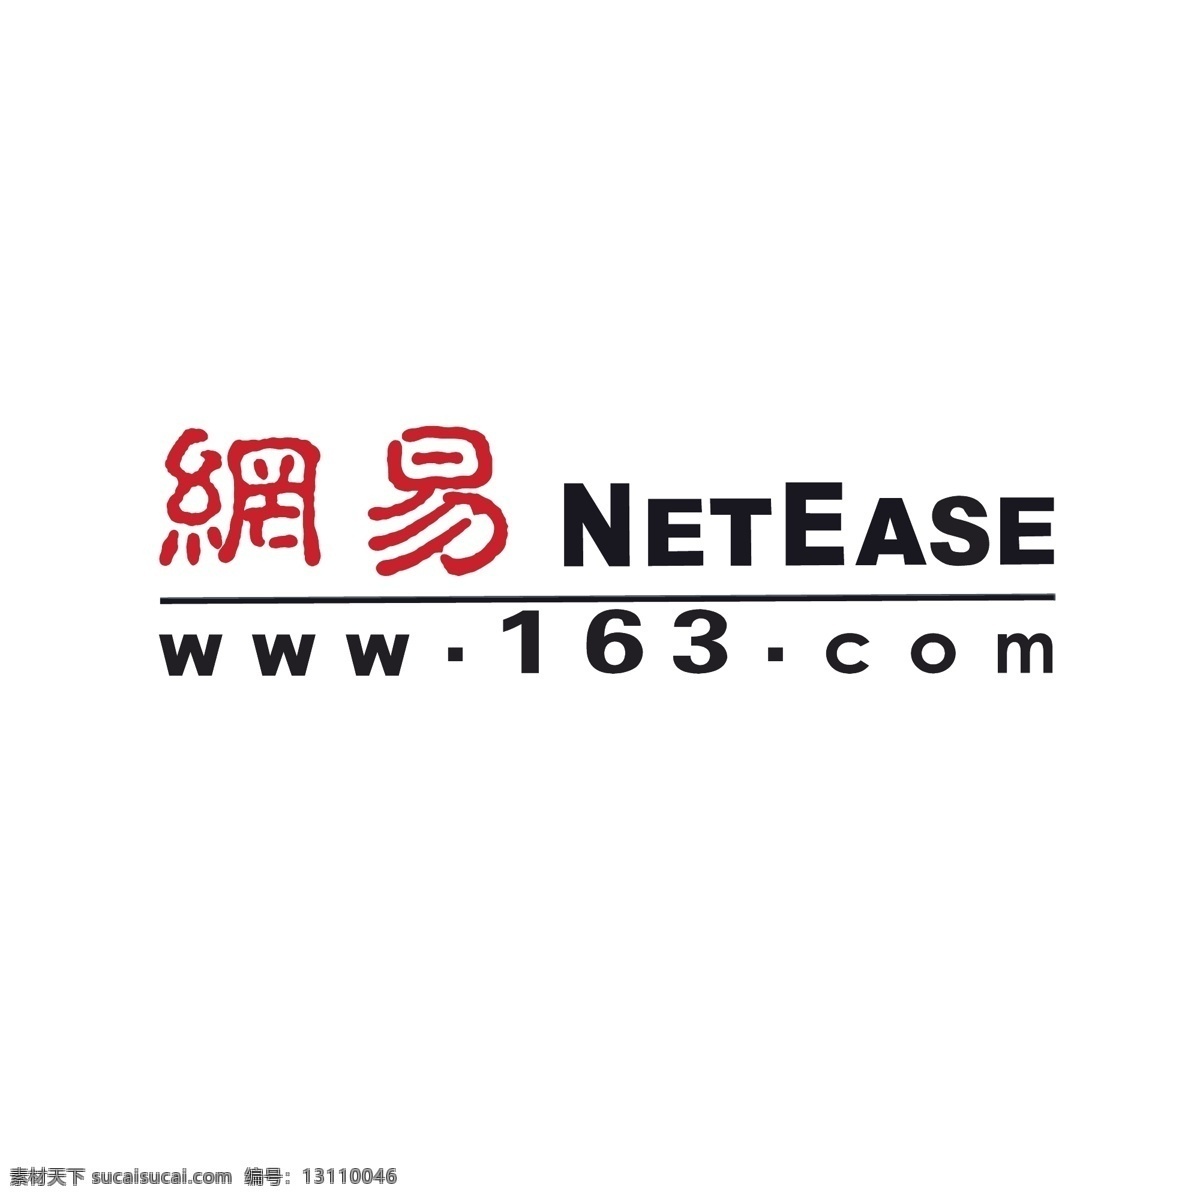 网易logo 门户网站 网易 logo netease 企业 标志 标识标志图标 矢量